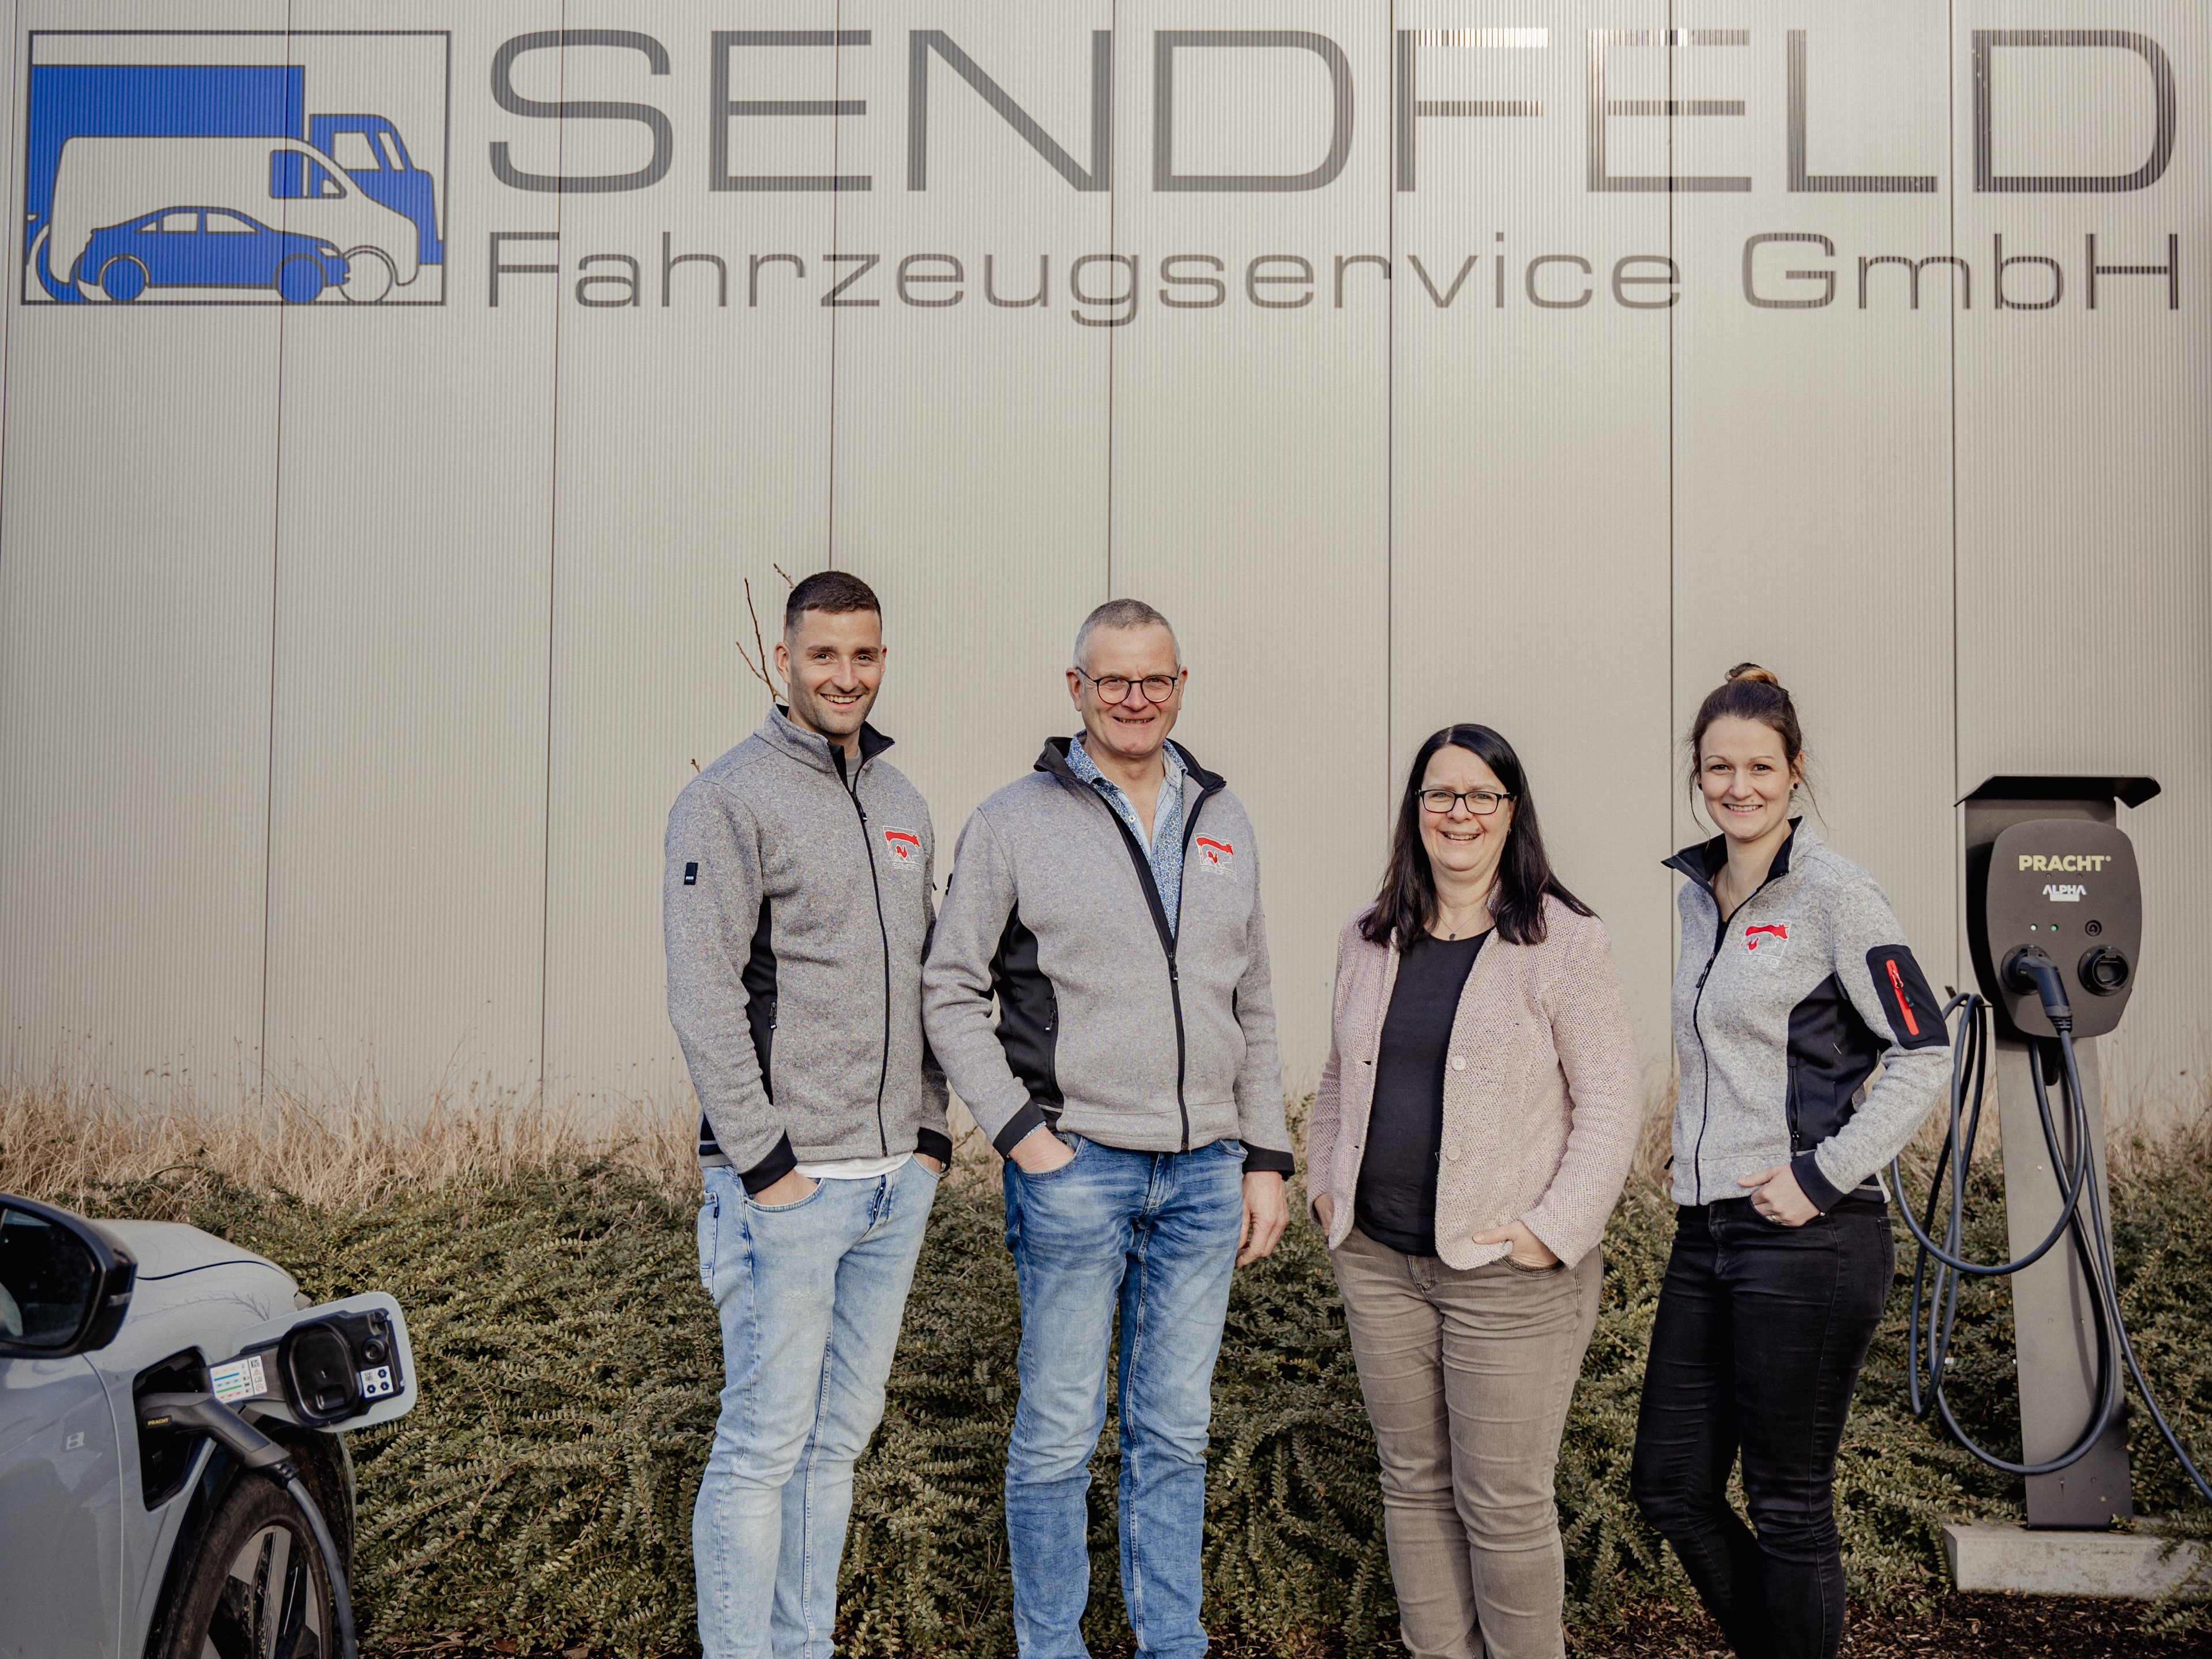 Zu Gast bei der Sendfeld GmbH in Ahaus-Ost II - Wirtschaftsförderung Ahaus auf Unternehmensbesuch